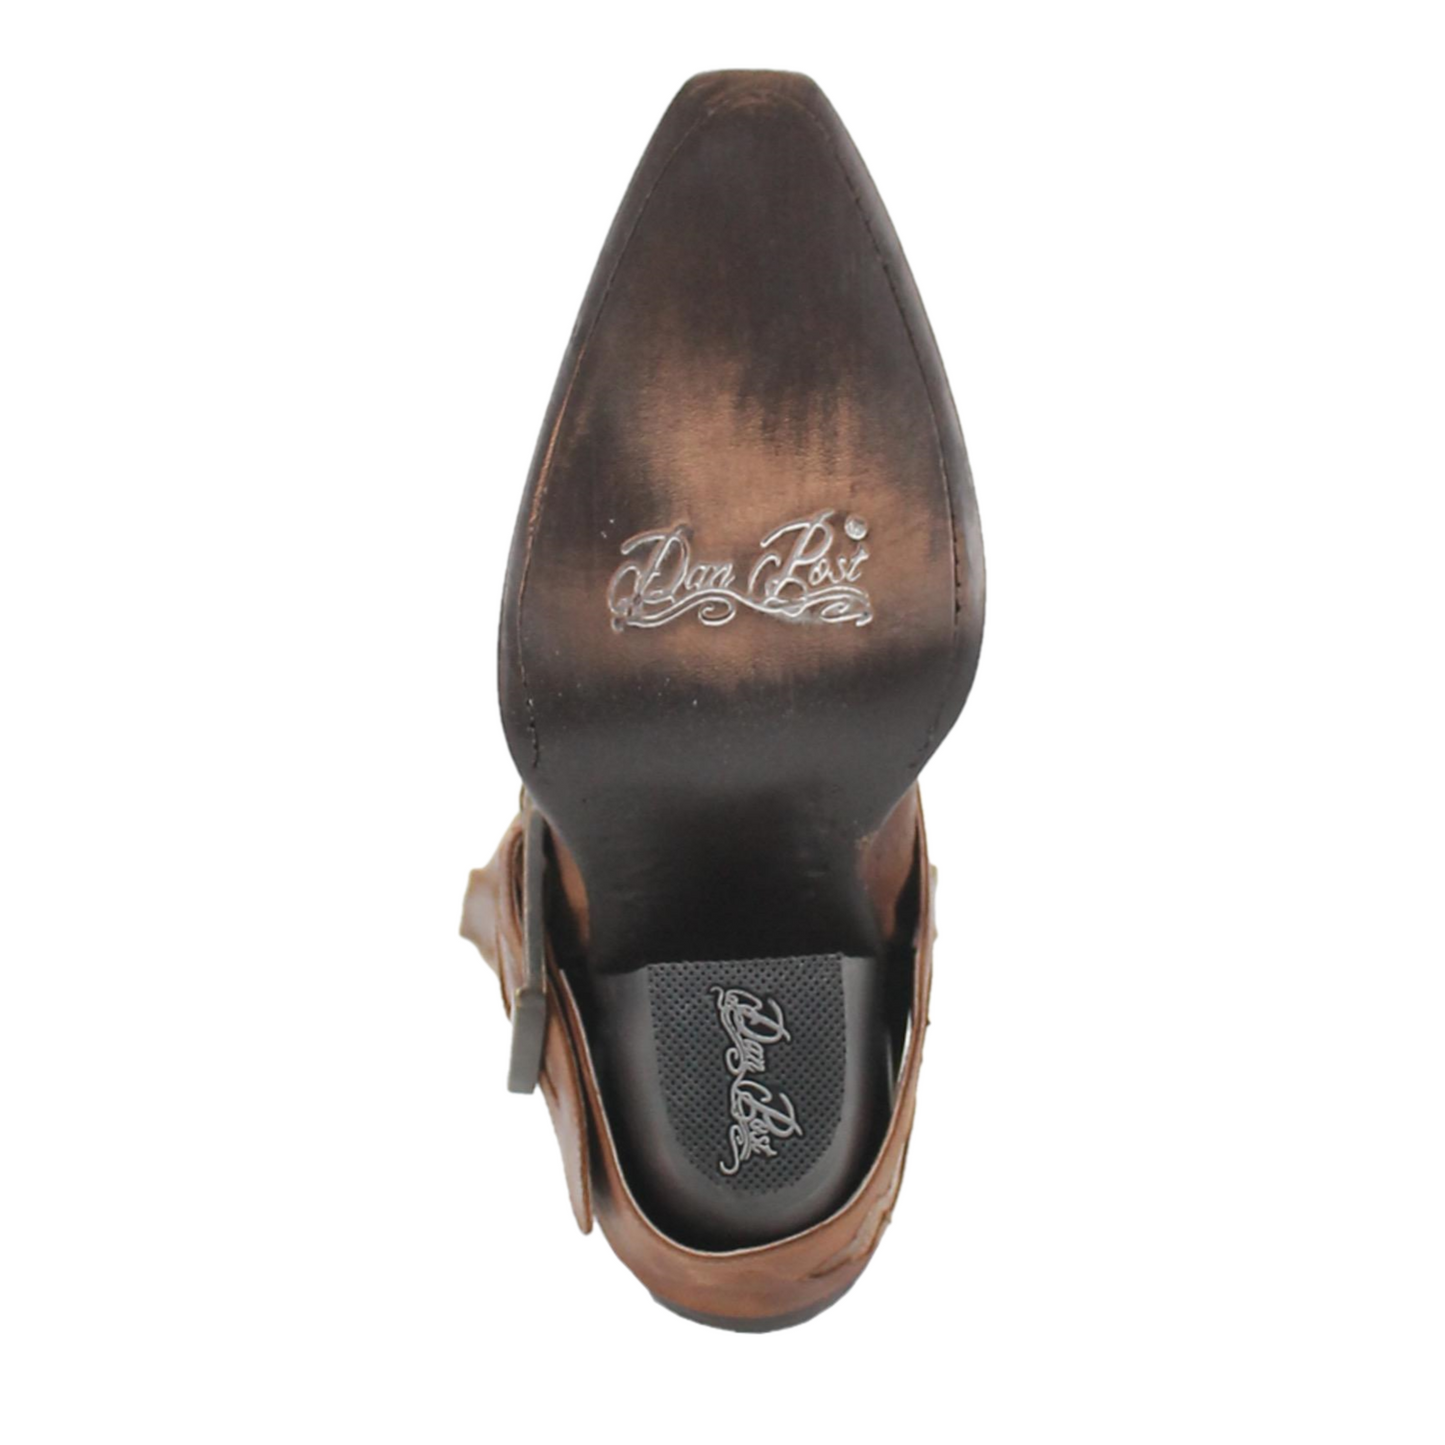 Dan Post® Ladies Sydney Vintage Western Brown Boots DP4205